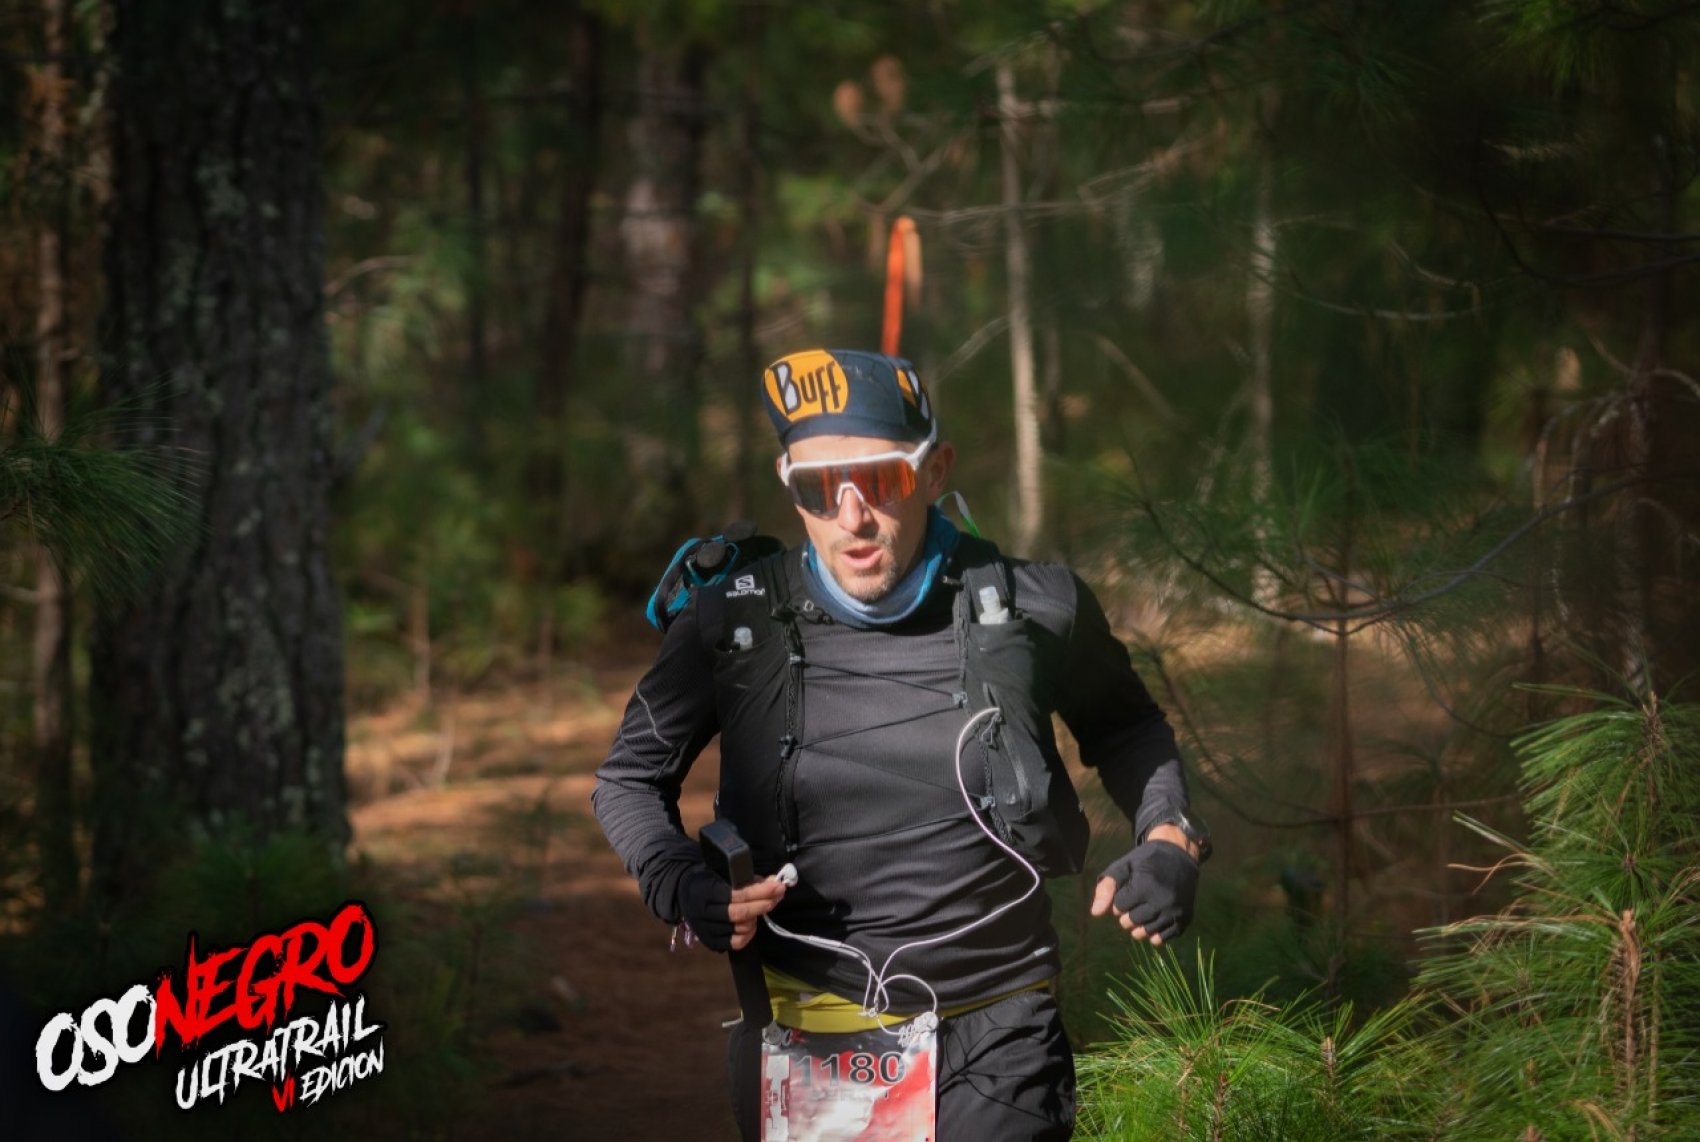 Oso Negro ® Ultra Trail 77K